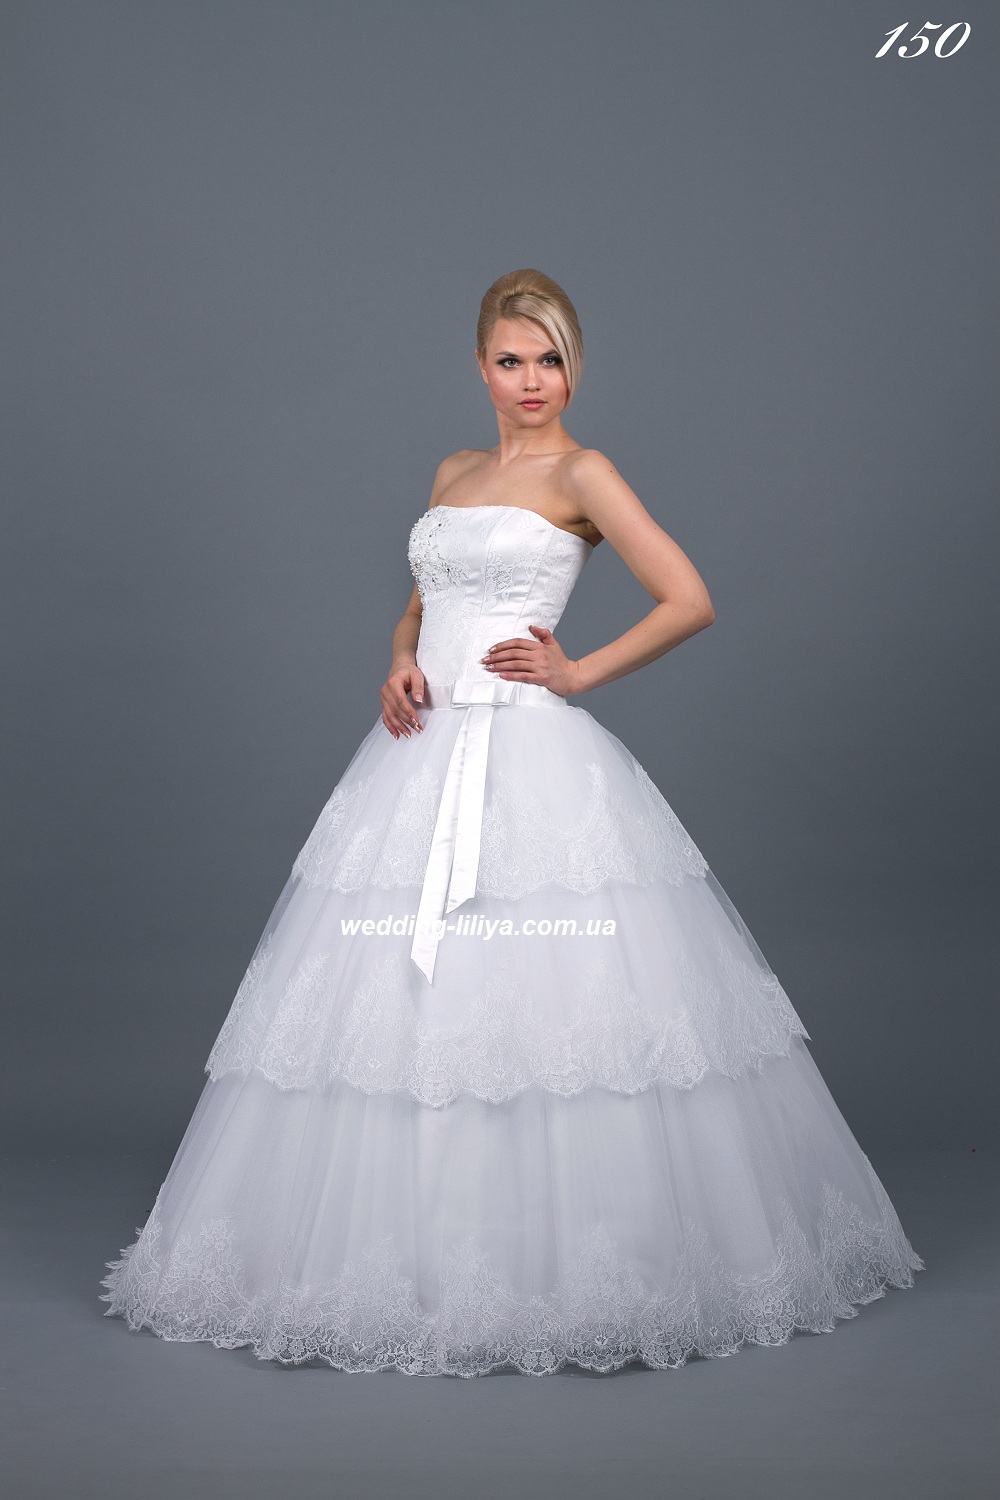 Свадебное платье №150